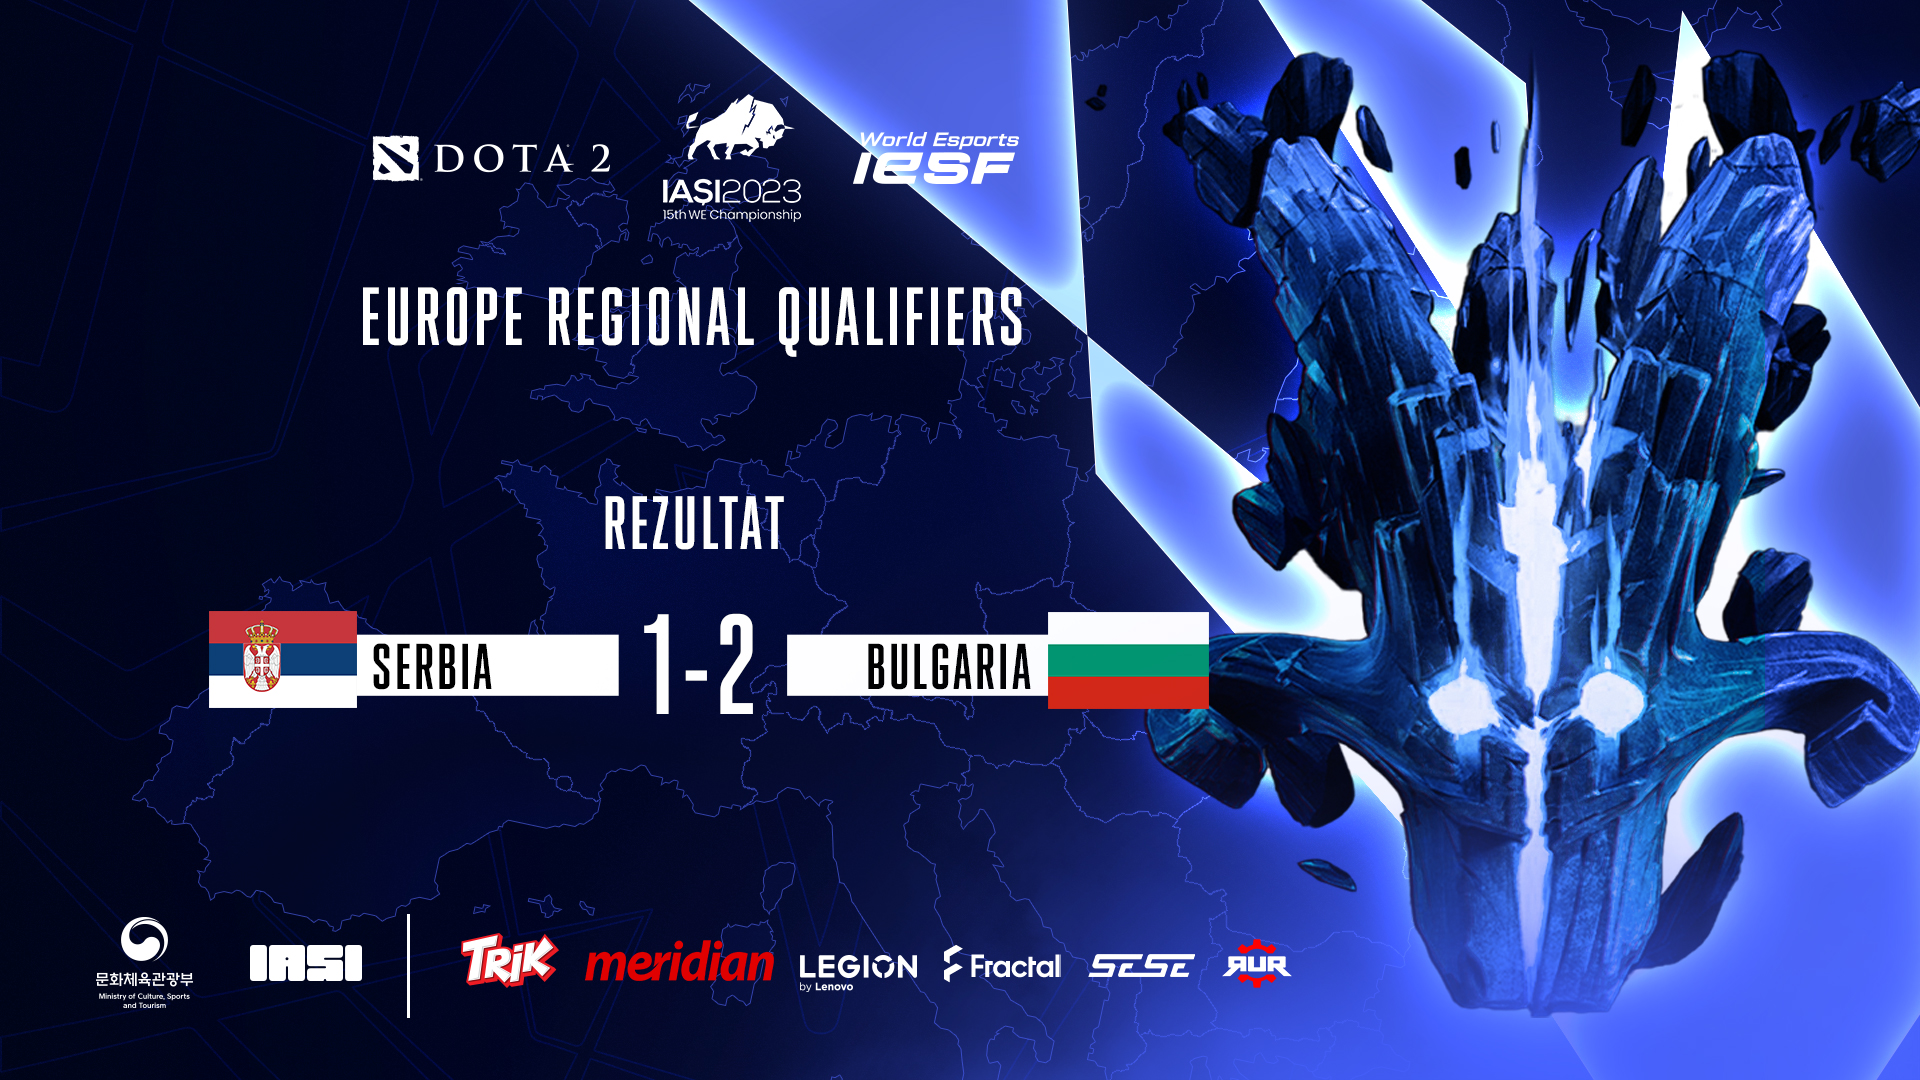 srbija-bugarska-dota2-iesf2023-regionals-semis-result1